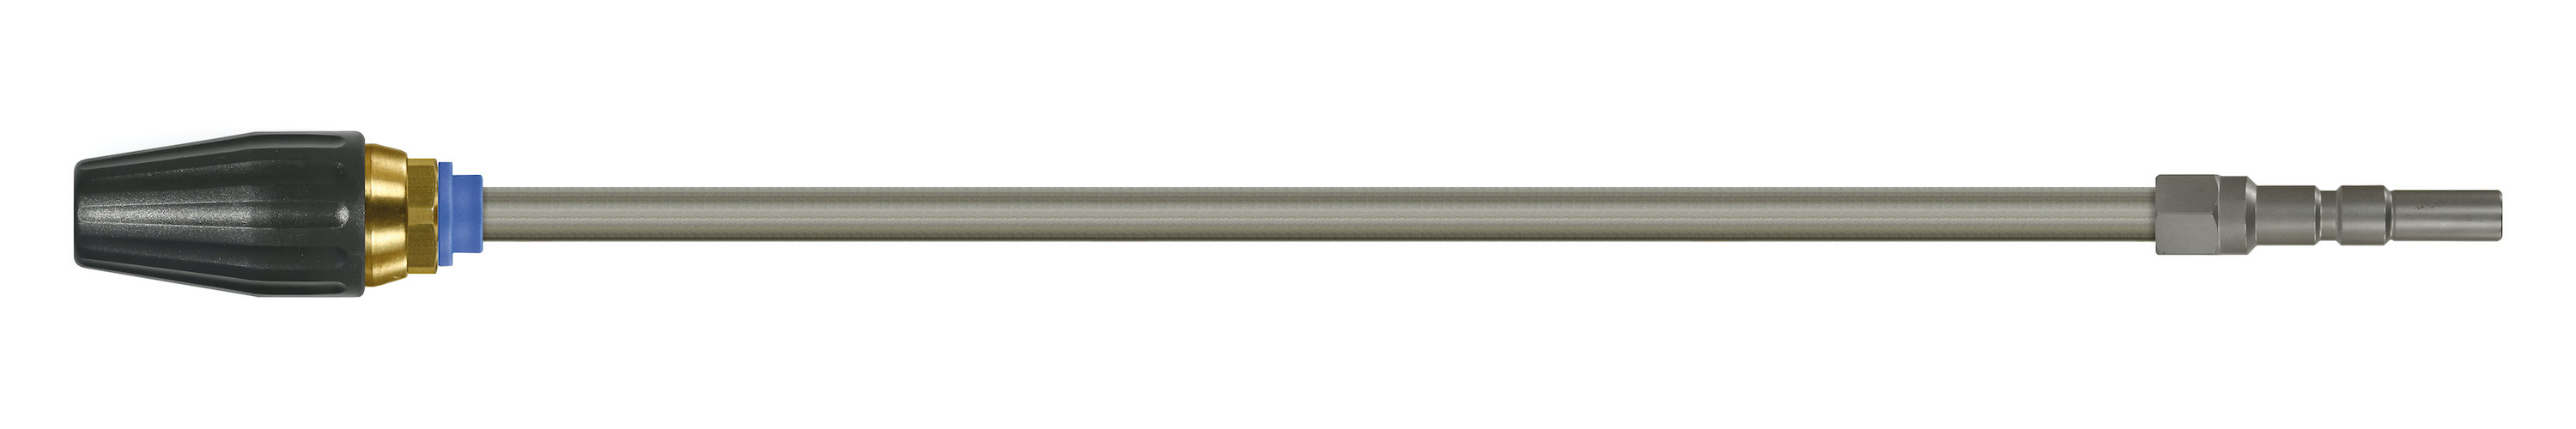 Coupleur KW. Lances tube zingué avec rotabuse ST-357.1. Cône 20°. 100 - 250 bar. Max. 100 °C, Calibre 030.